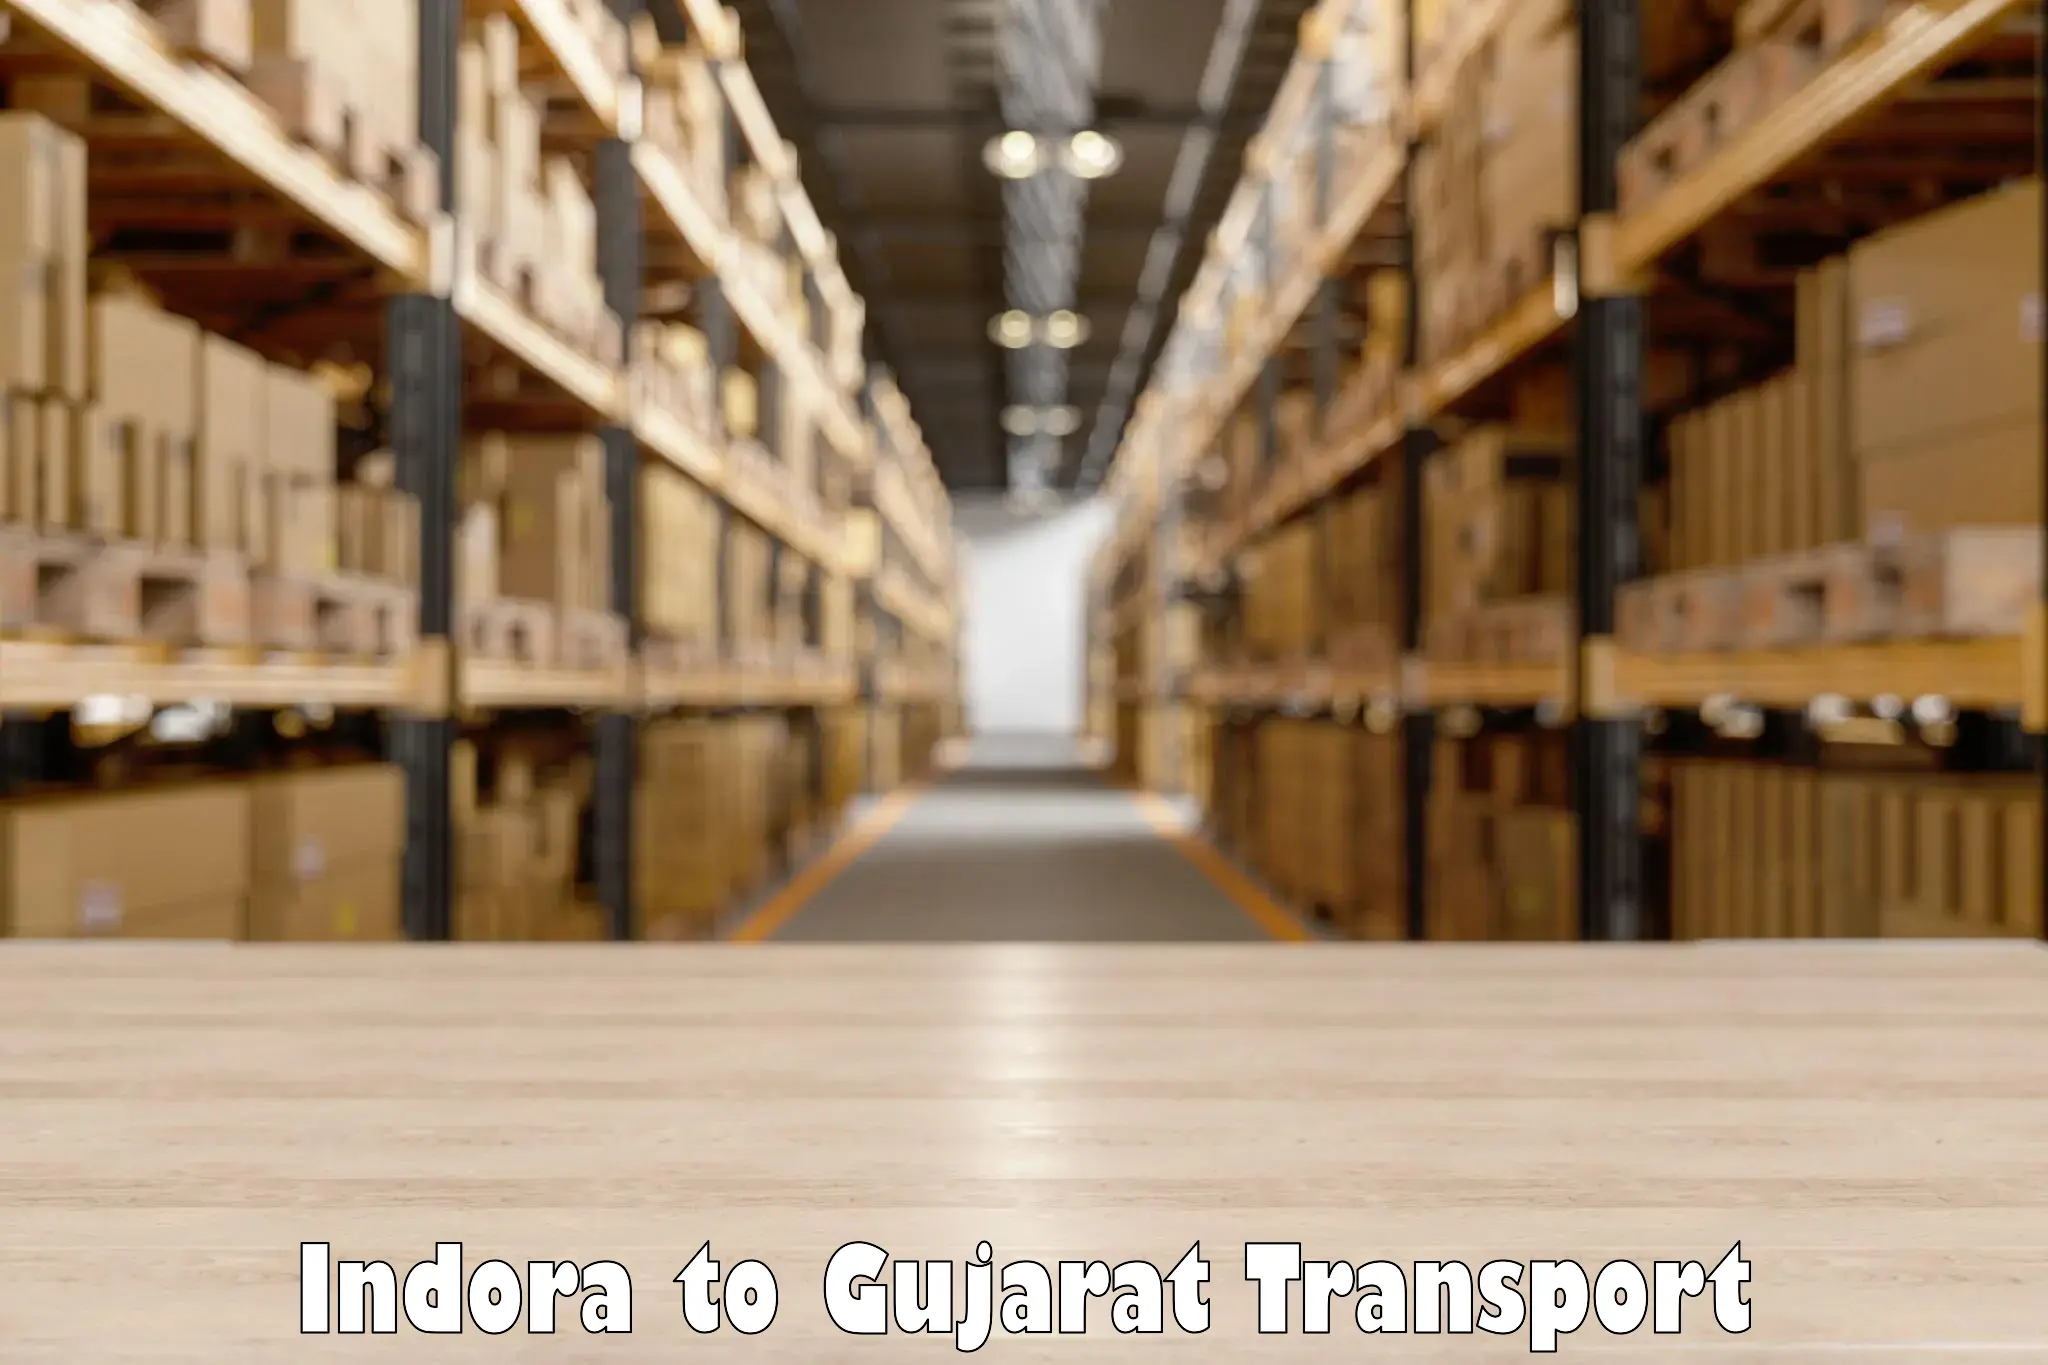 Interstate transport services Indora to Dayapar